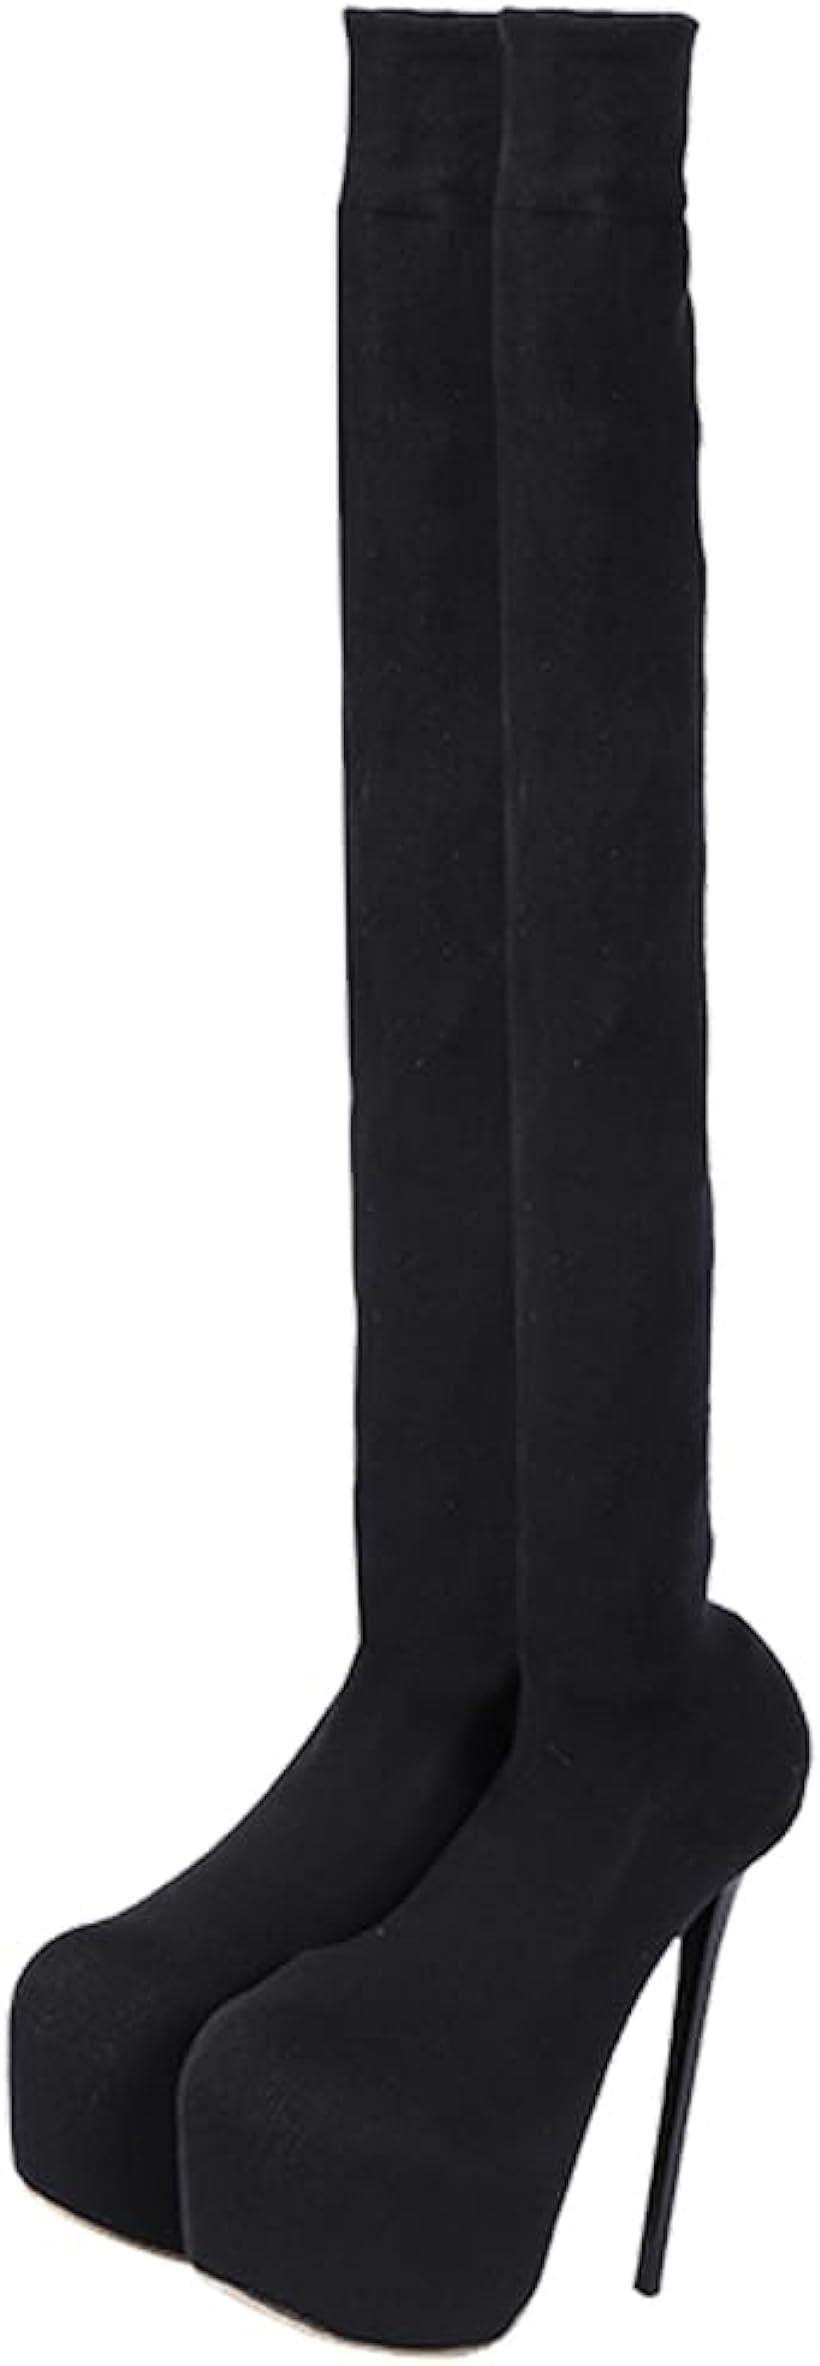 ニーハイブーツ レディース ロングブーツ ピンヒール 15cm 膝上 柔らかい ストレッチロングブーツ 可愛い 暖かい 38( ブラック, 24.0 cm)